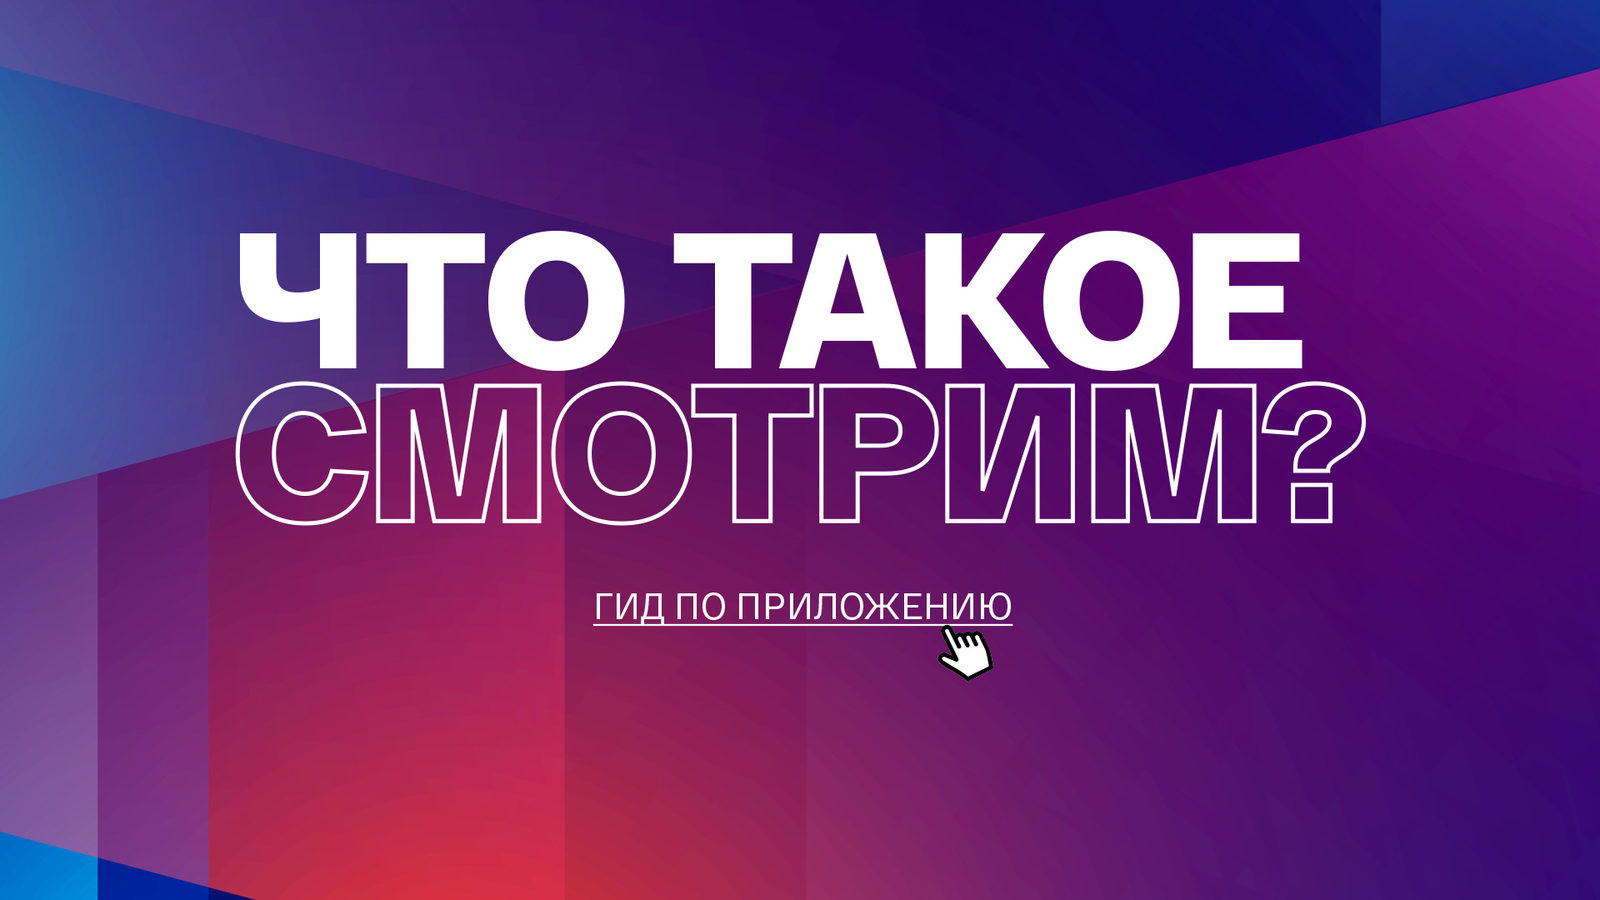 ВГТРК запустил онлайн-платформу «Смотрим»